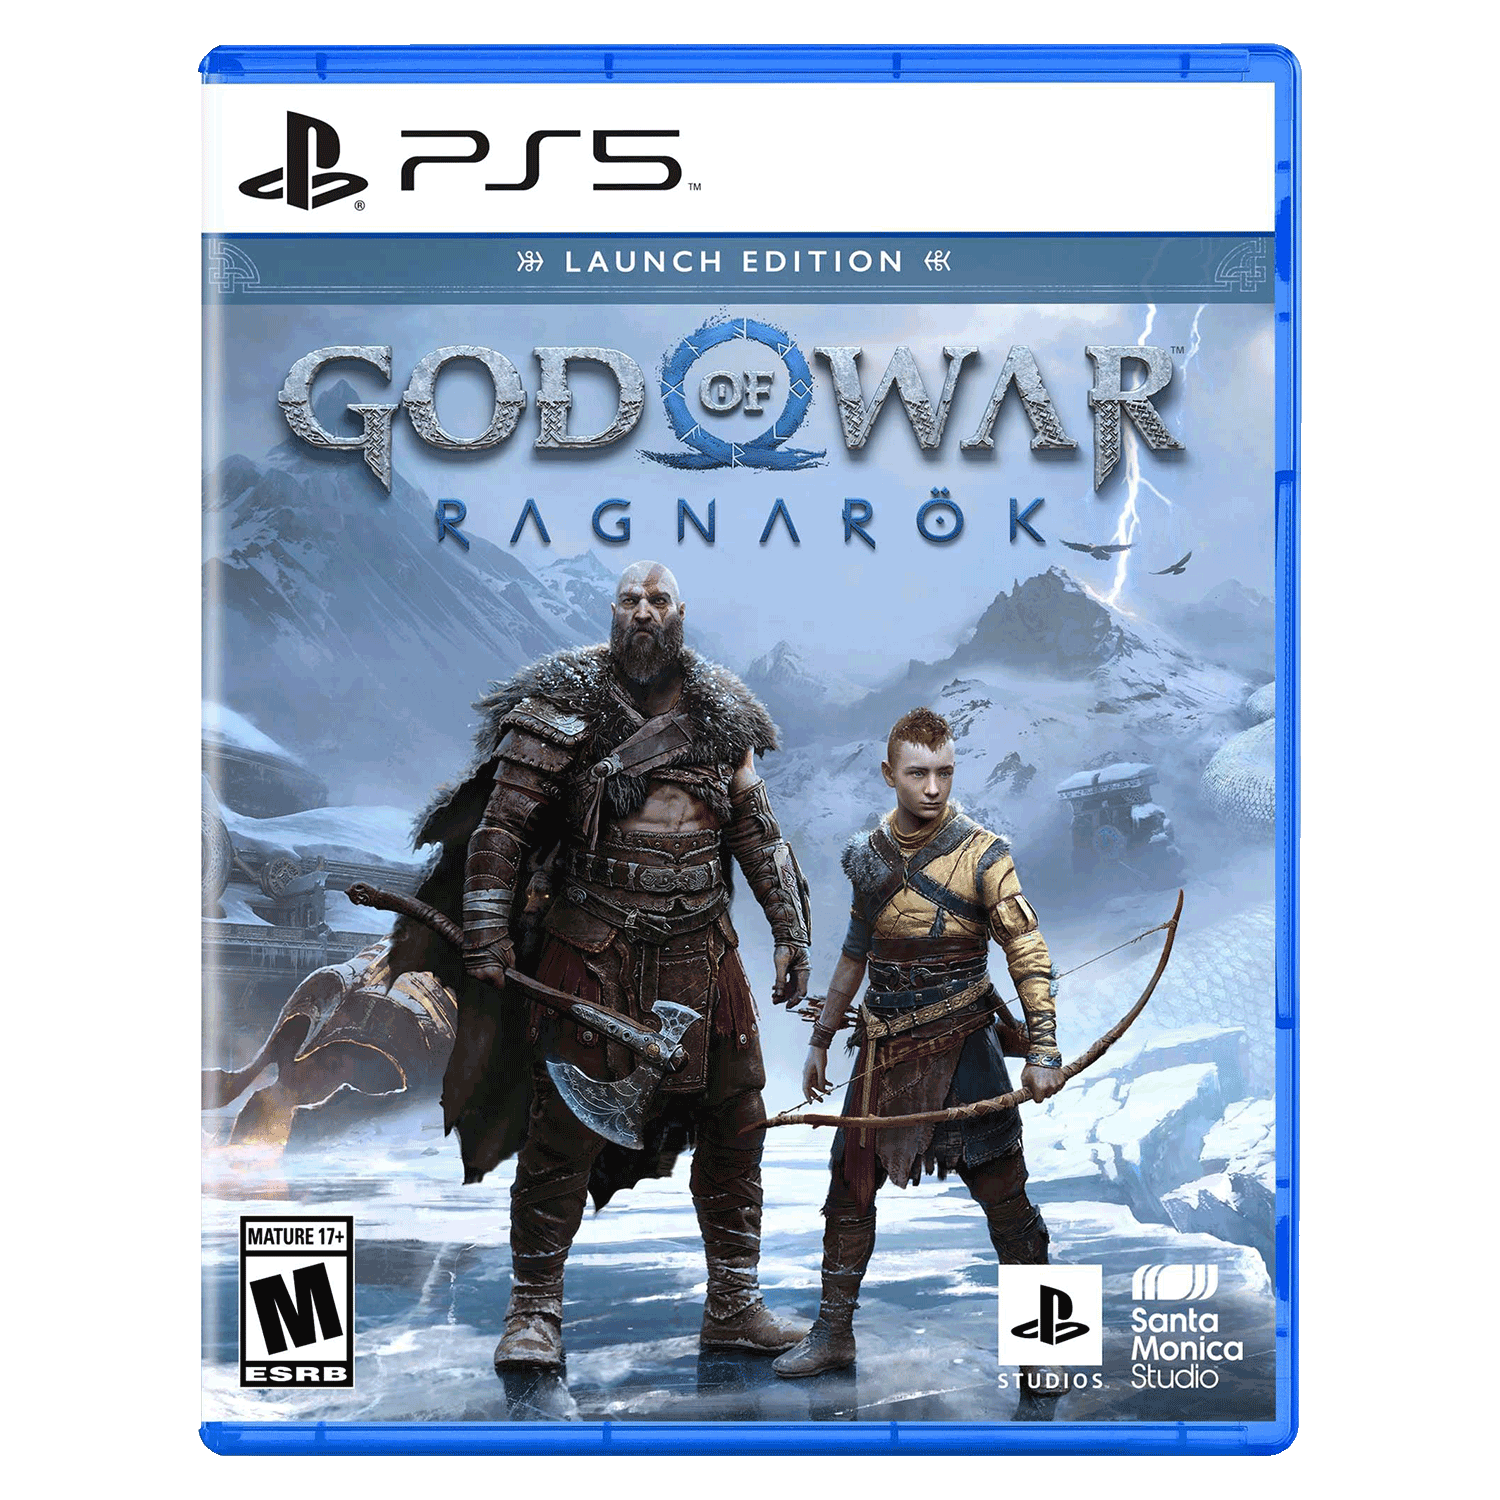 Sony PlayStation 5 Digital Edition With God of War Ragnarok included Branco